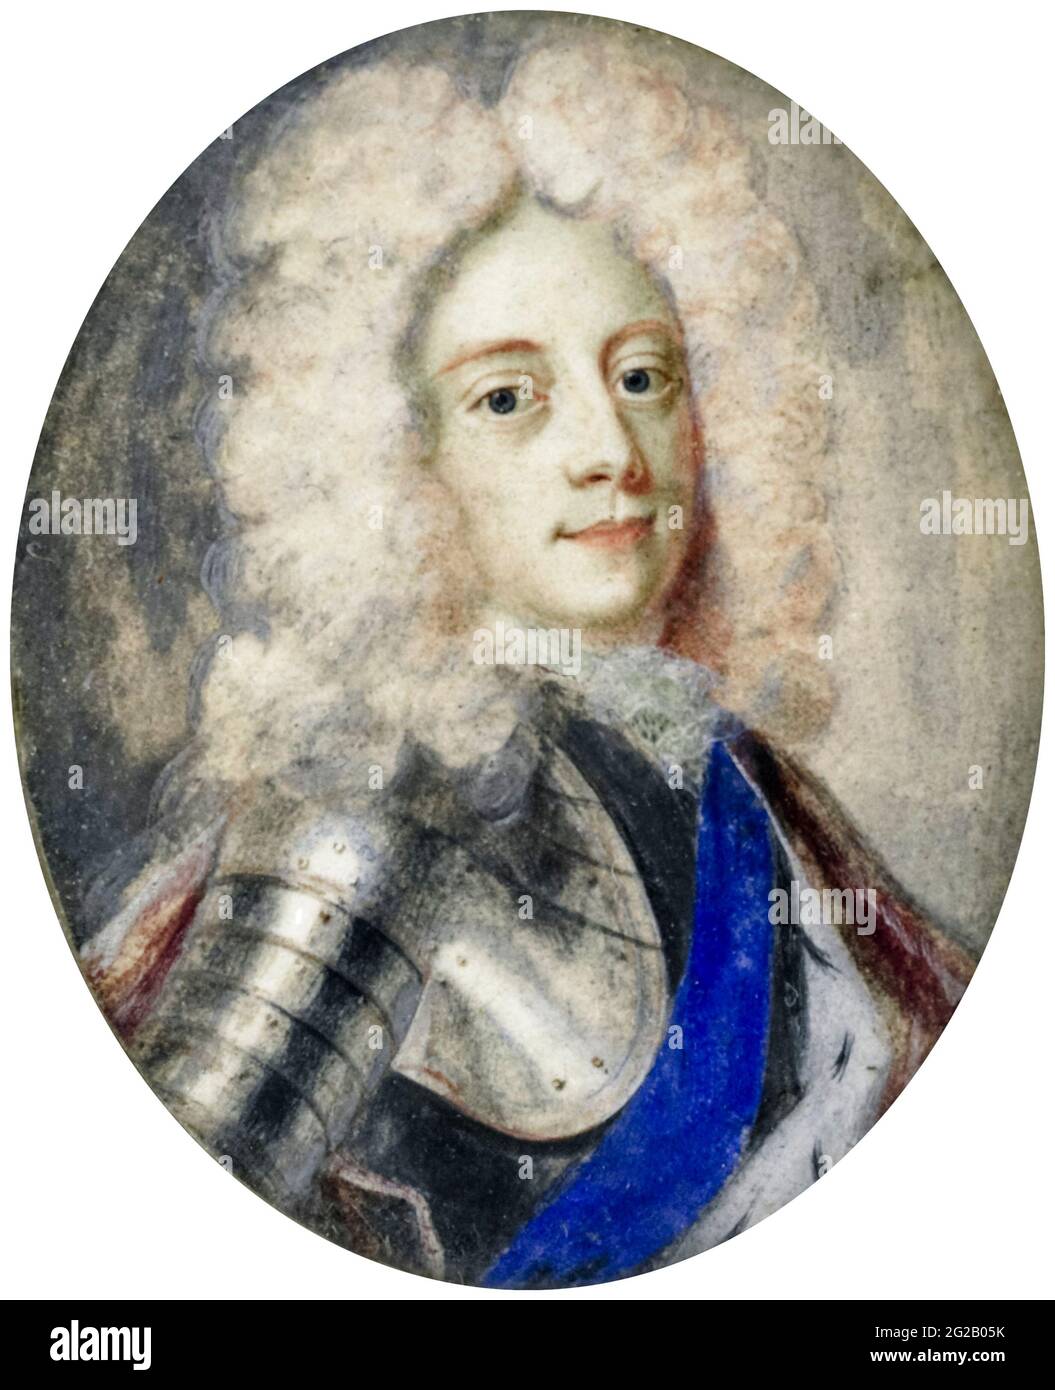 George III (1738-1820) Rey del Reino Unido, retrato en miniatura de Benjamin Arlaud, 1706 Foto de stock